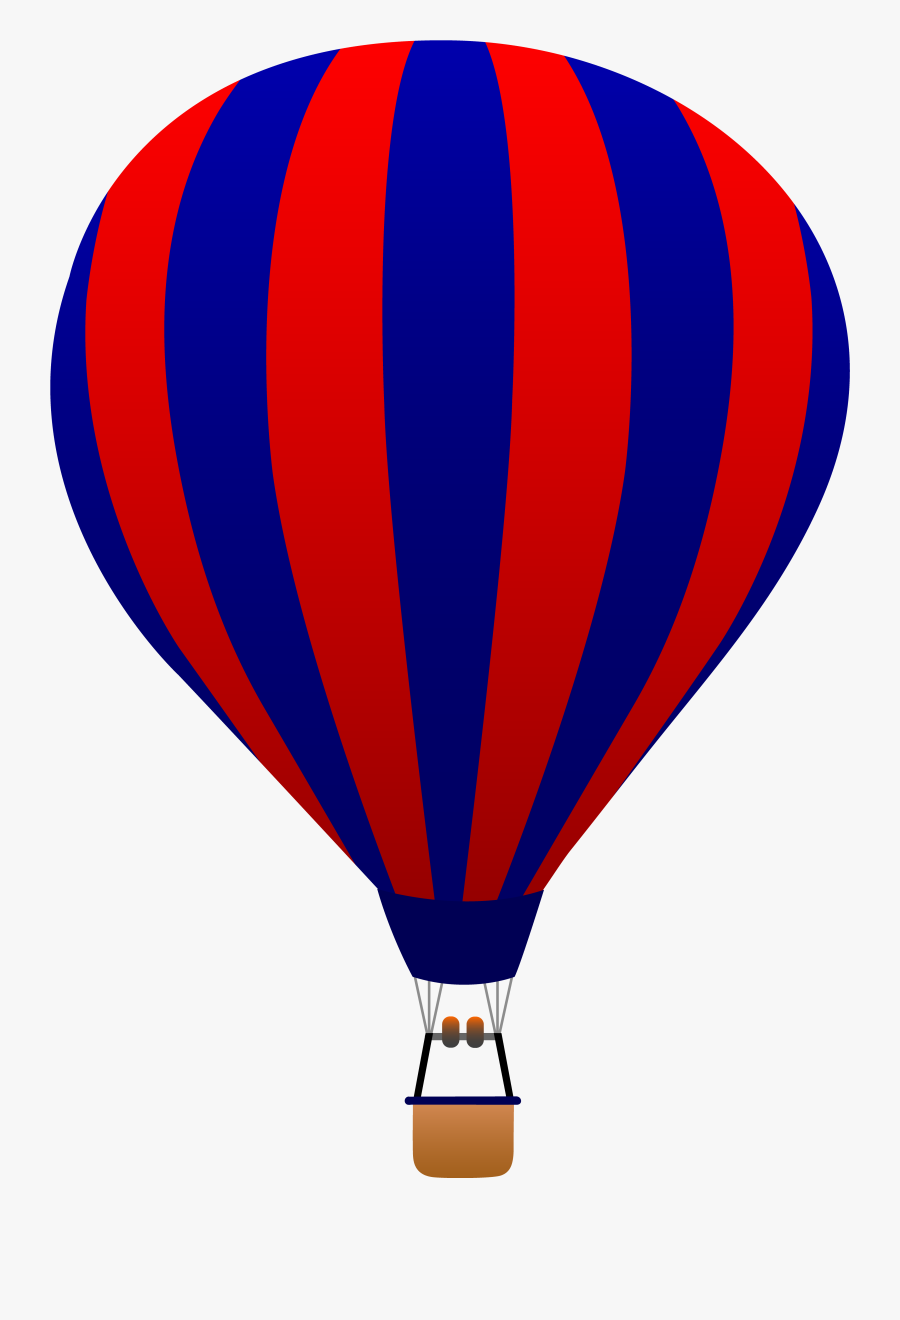 Hot Air Balloon Clipart Black And White Free - Cartoon Hot Air Balloon Vector, Transparent Clipart